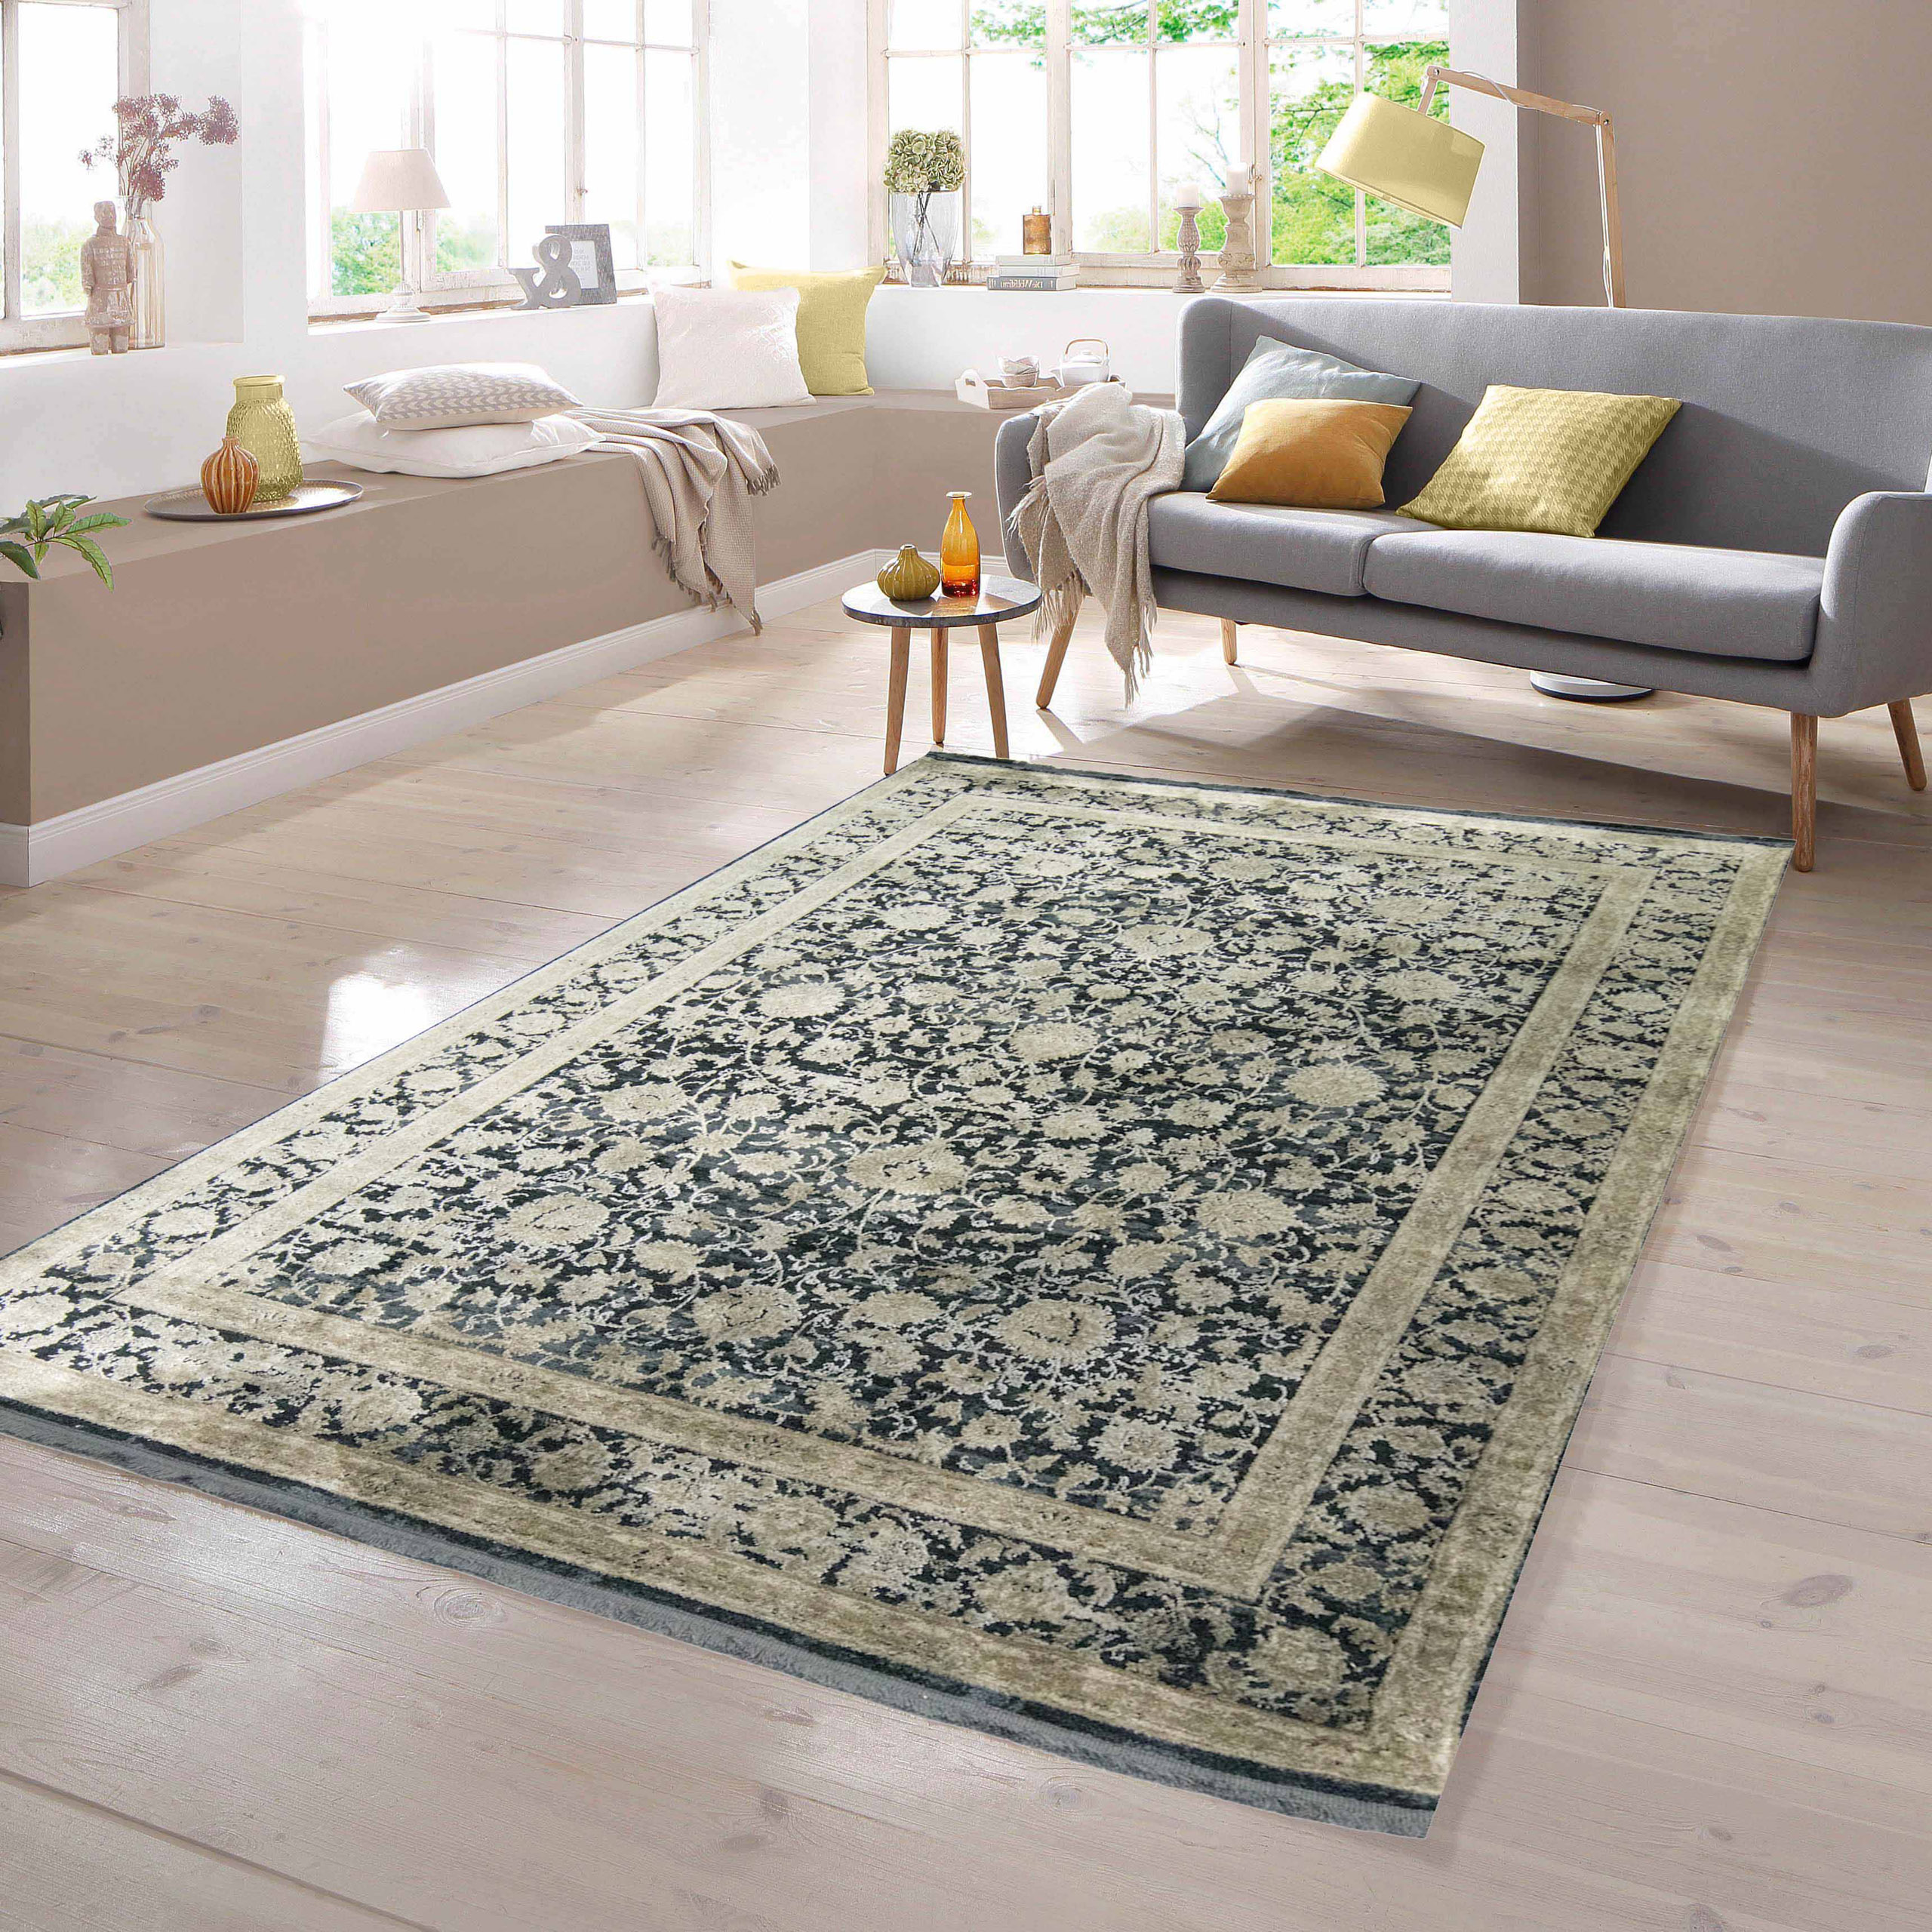 TeppichHome24 - Orientalische Teppiche guter Qualität günstig online kaufen